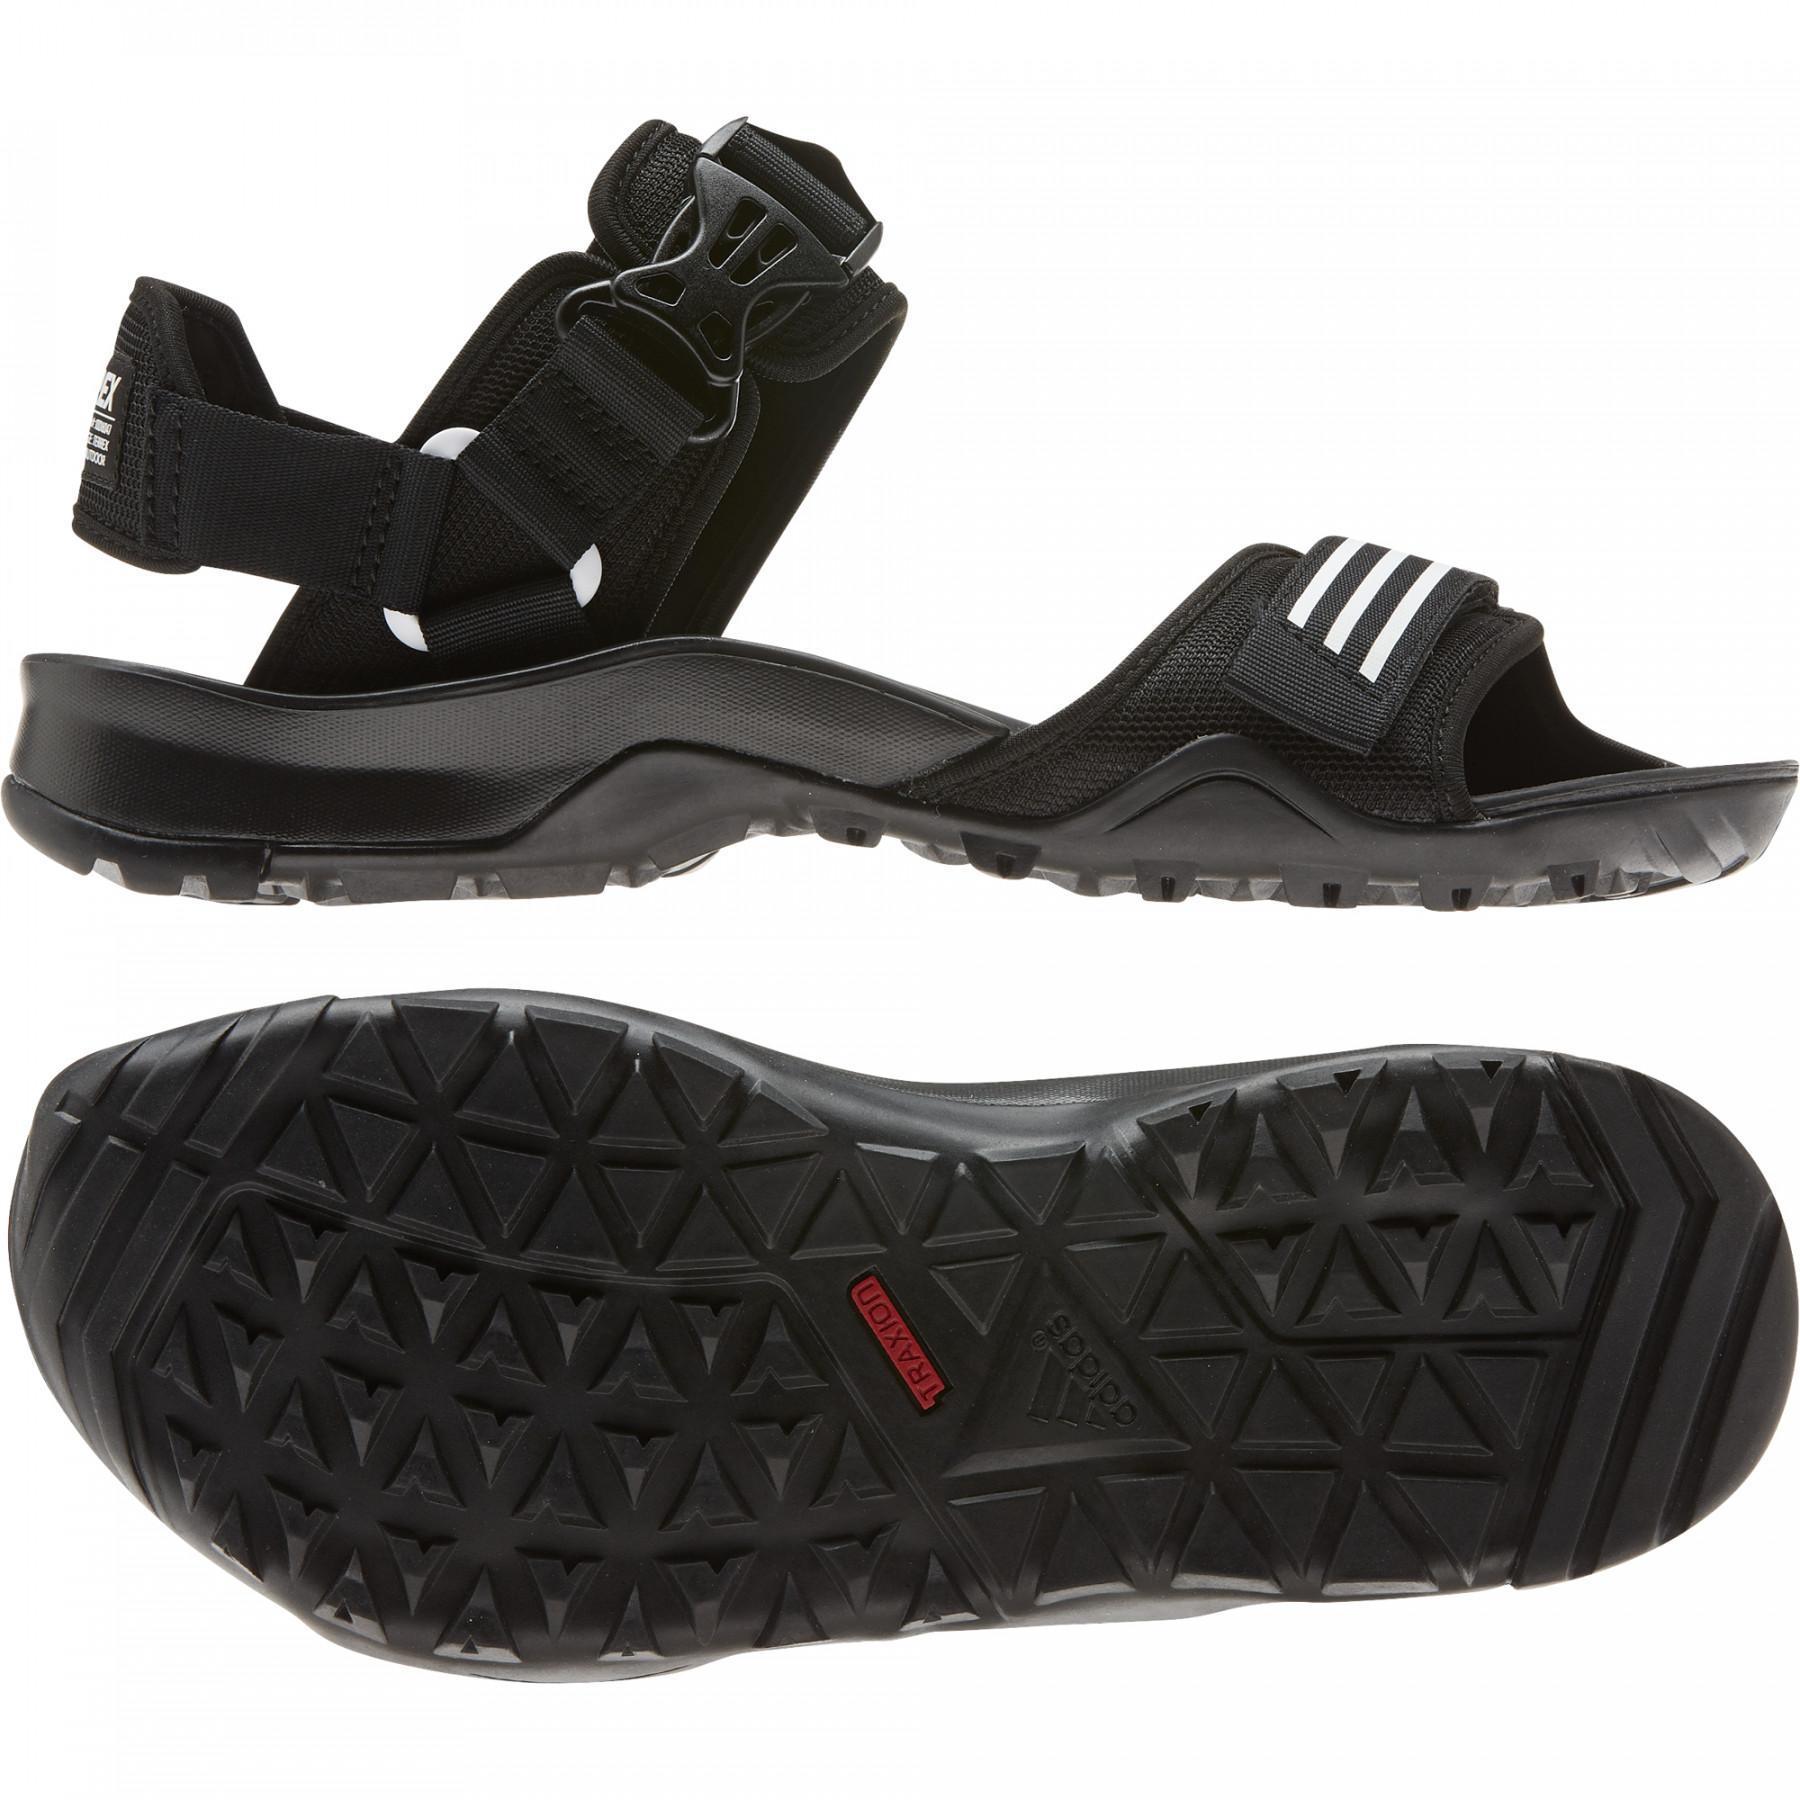 Sandale adidas Cyprex Ultra DLX